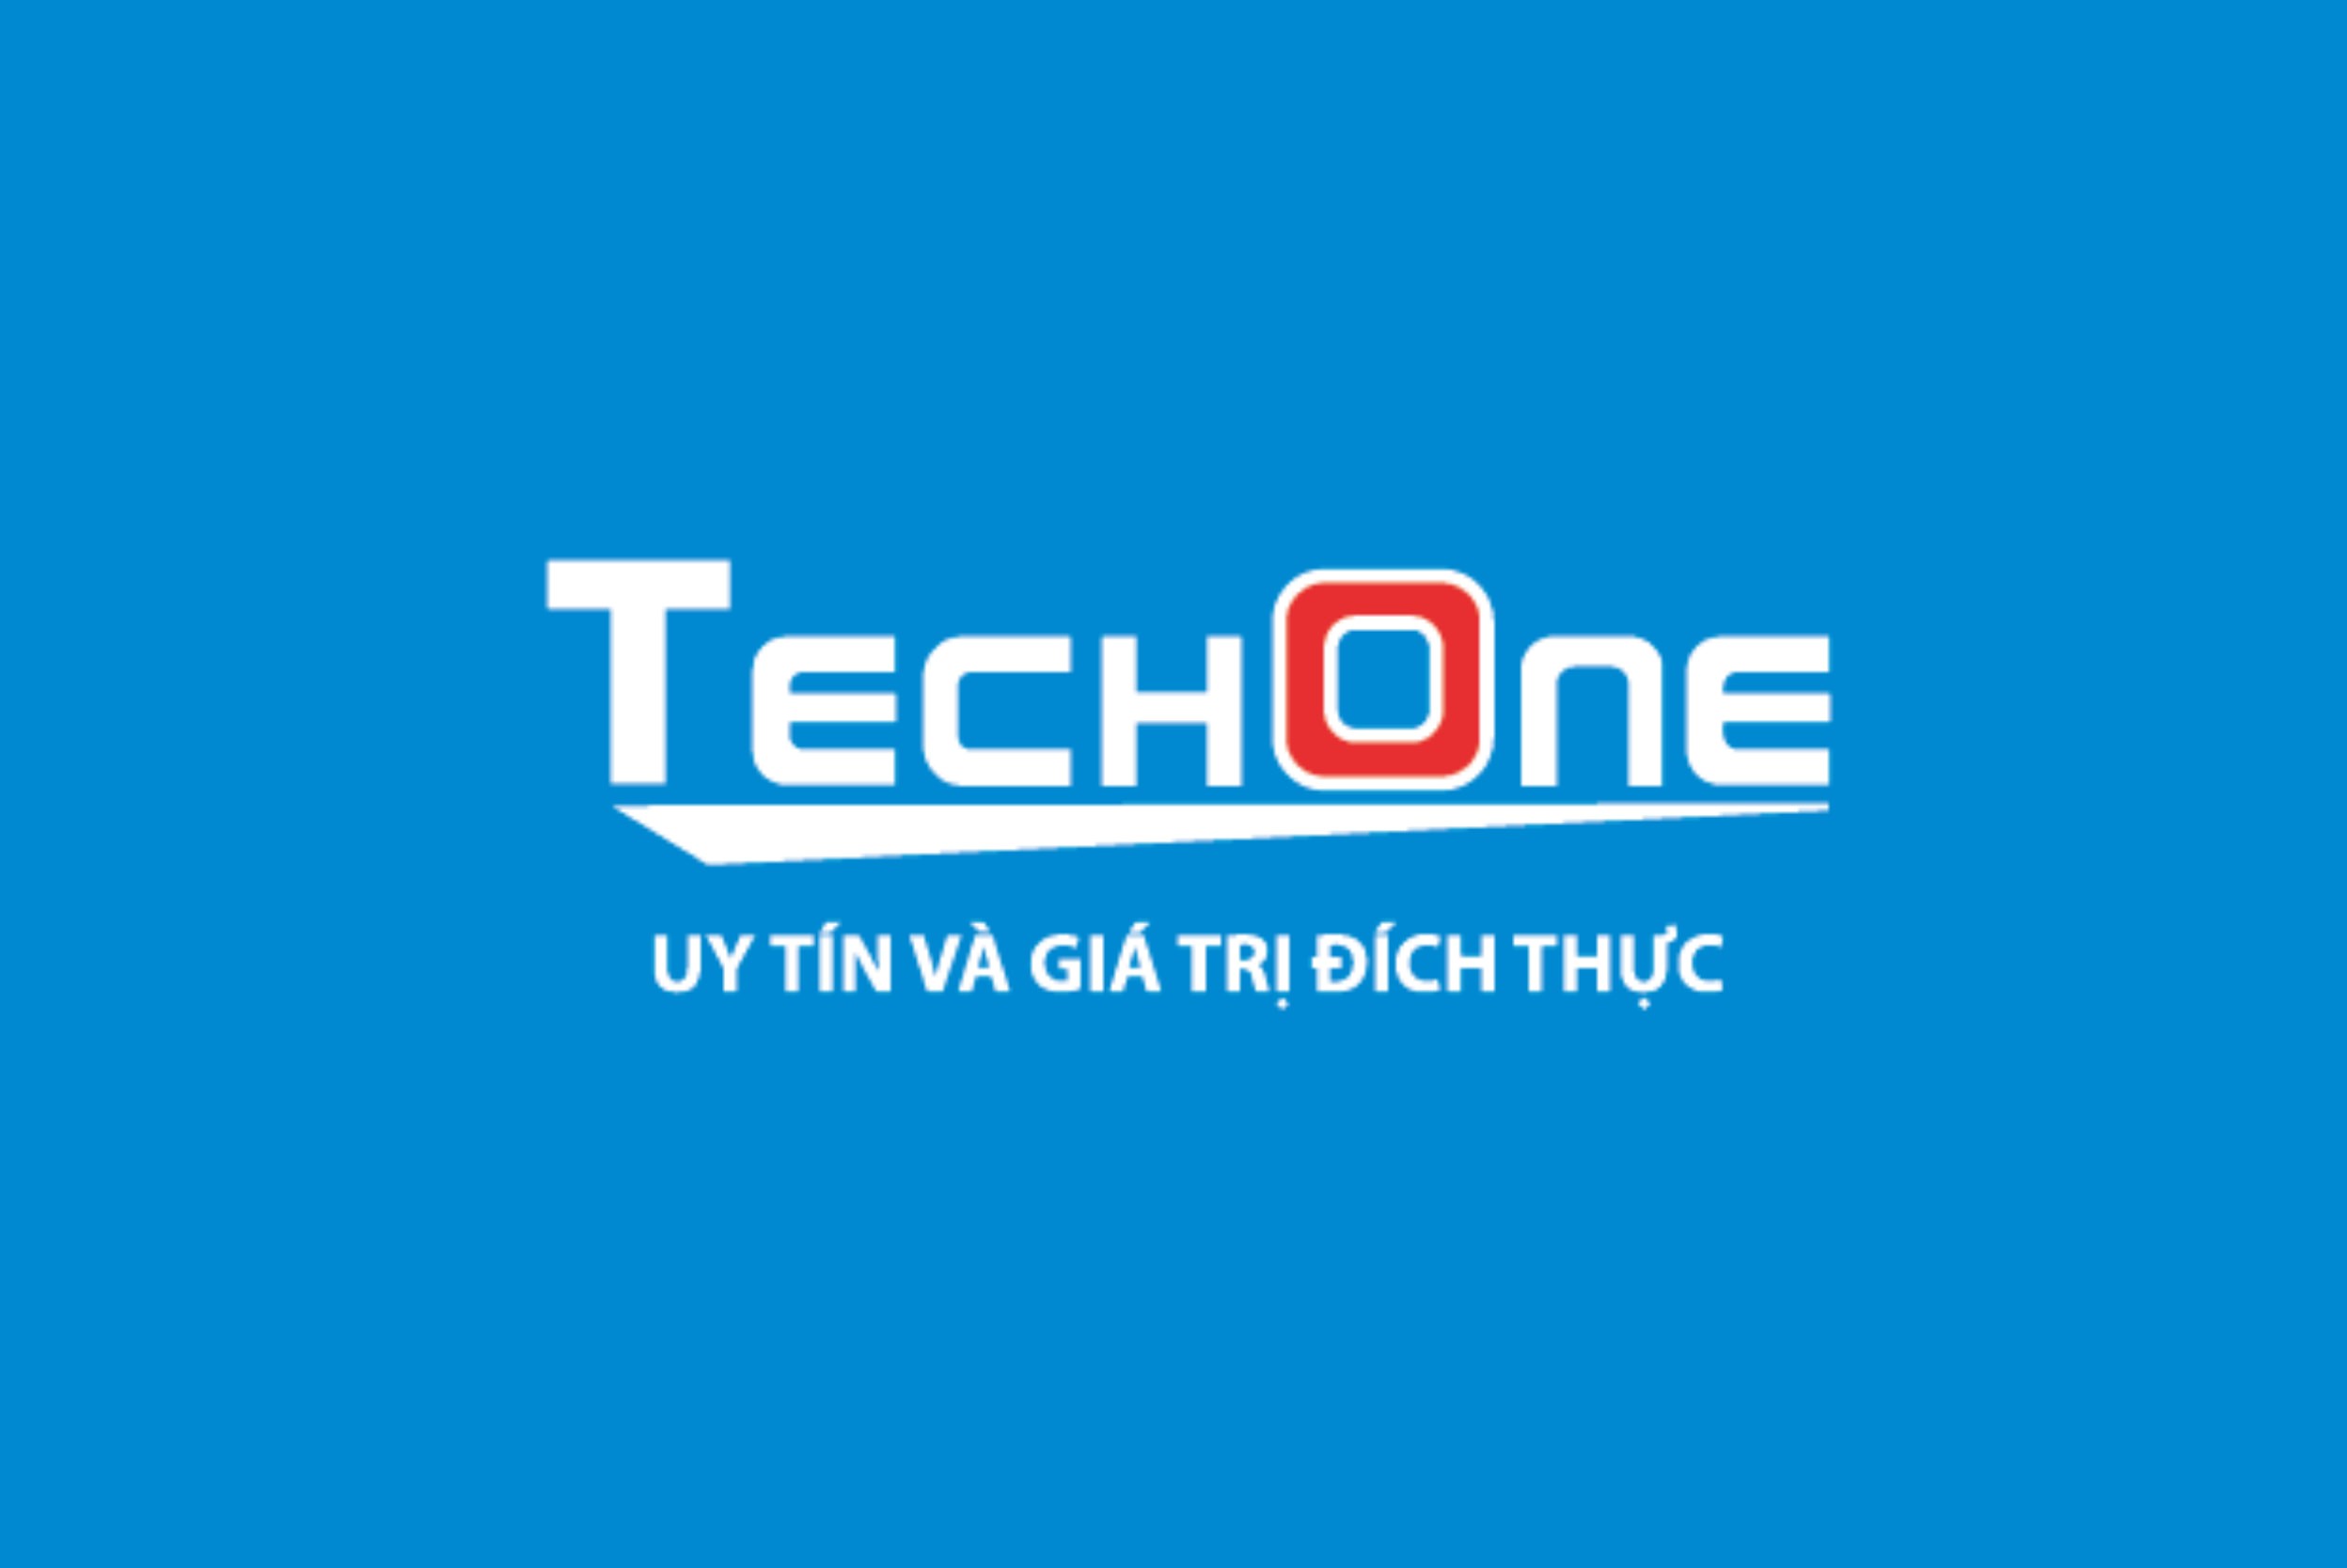 Tech-one-logo